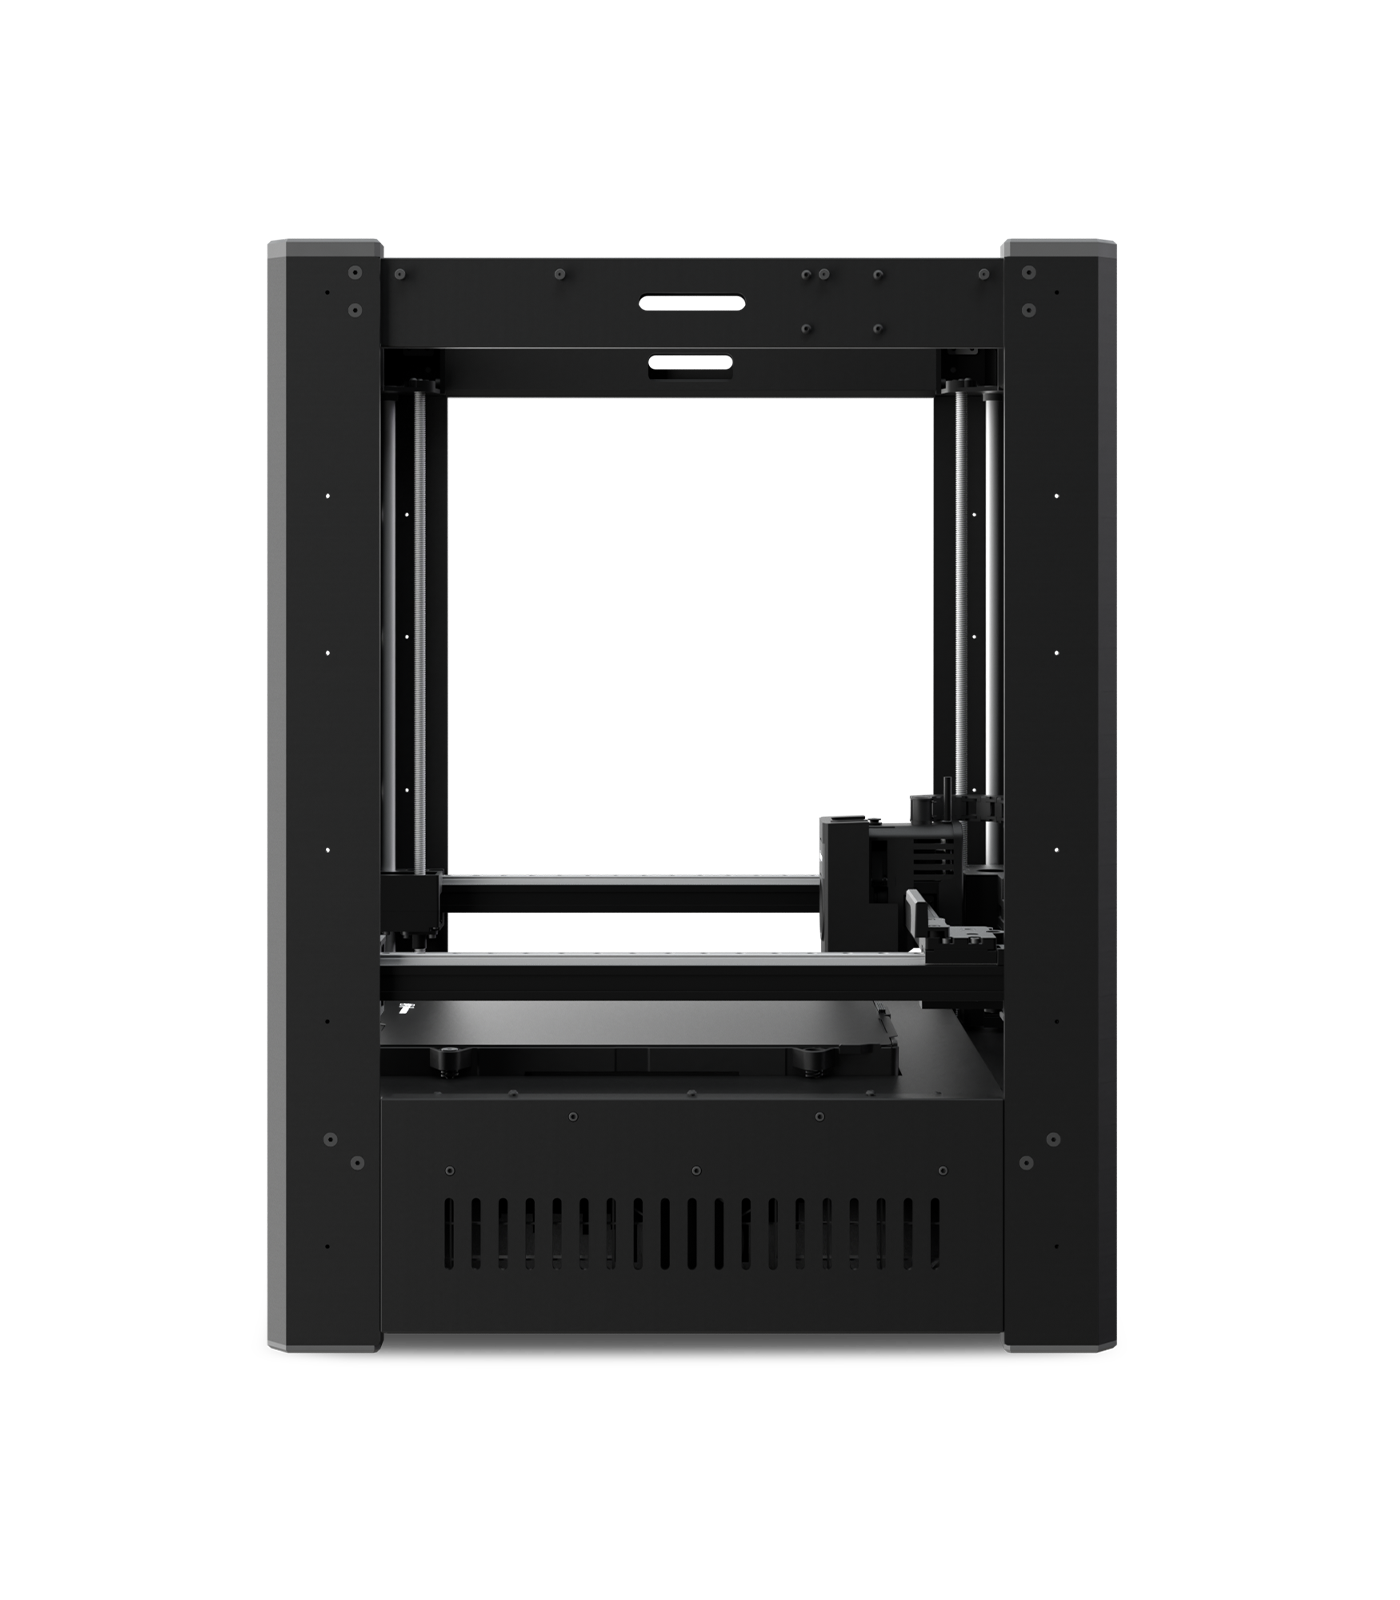 Phrozen Arco FDM 3D Printer